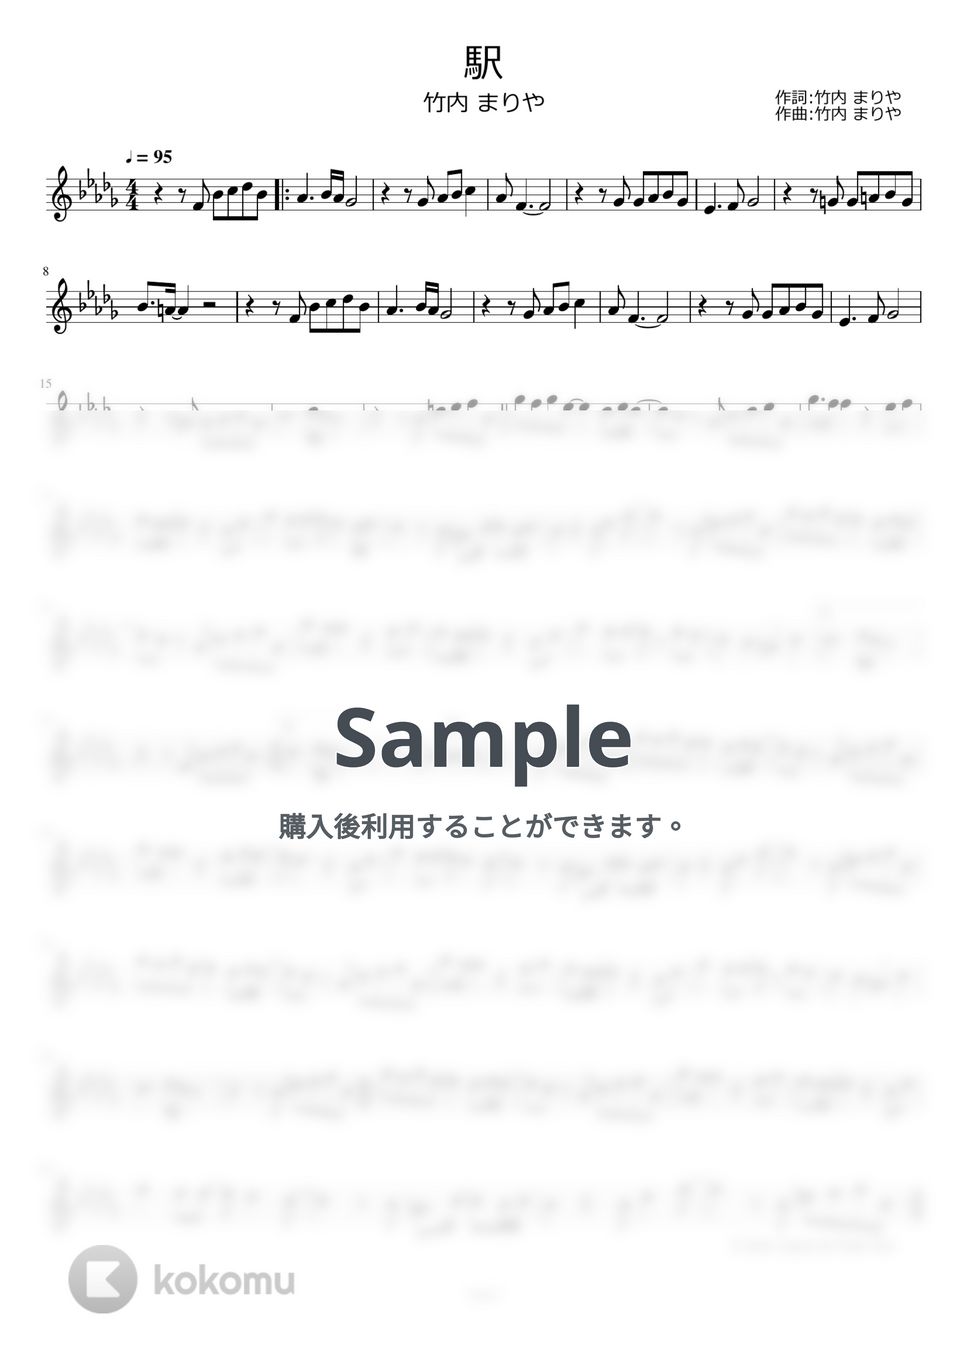 竹内まりや - 駅 by ayako music school